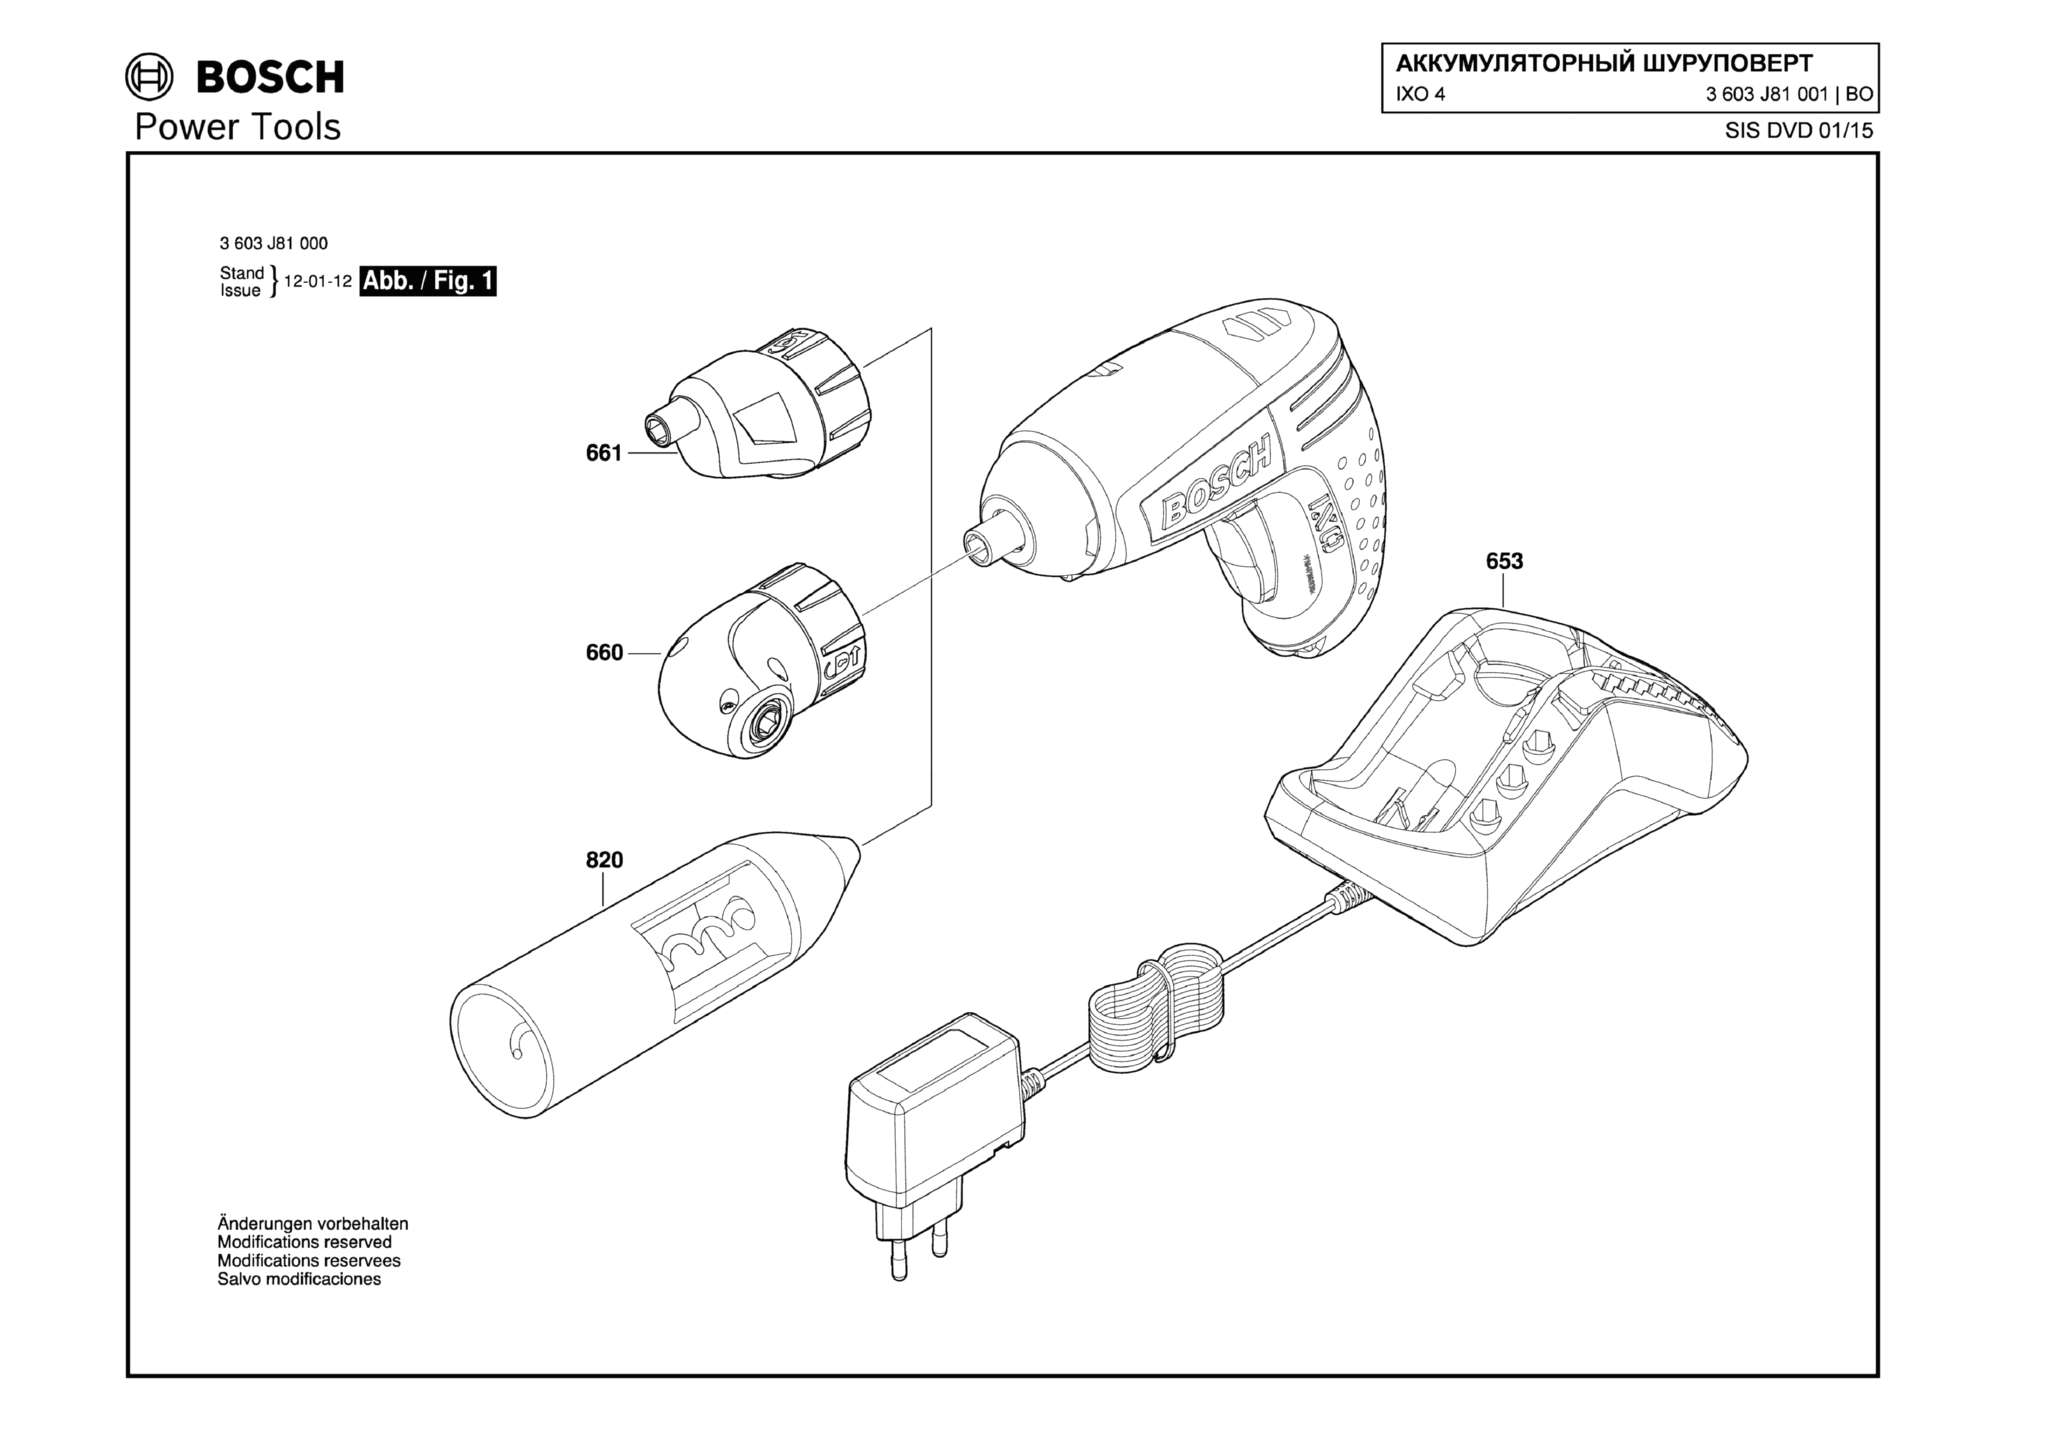 Запчасти, схема и деталировка Bosch IXO 4 (ТИП 3603J81001)